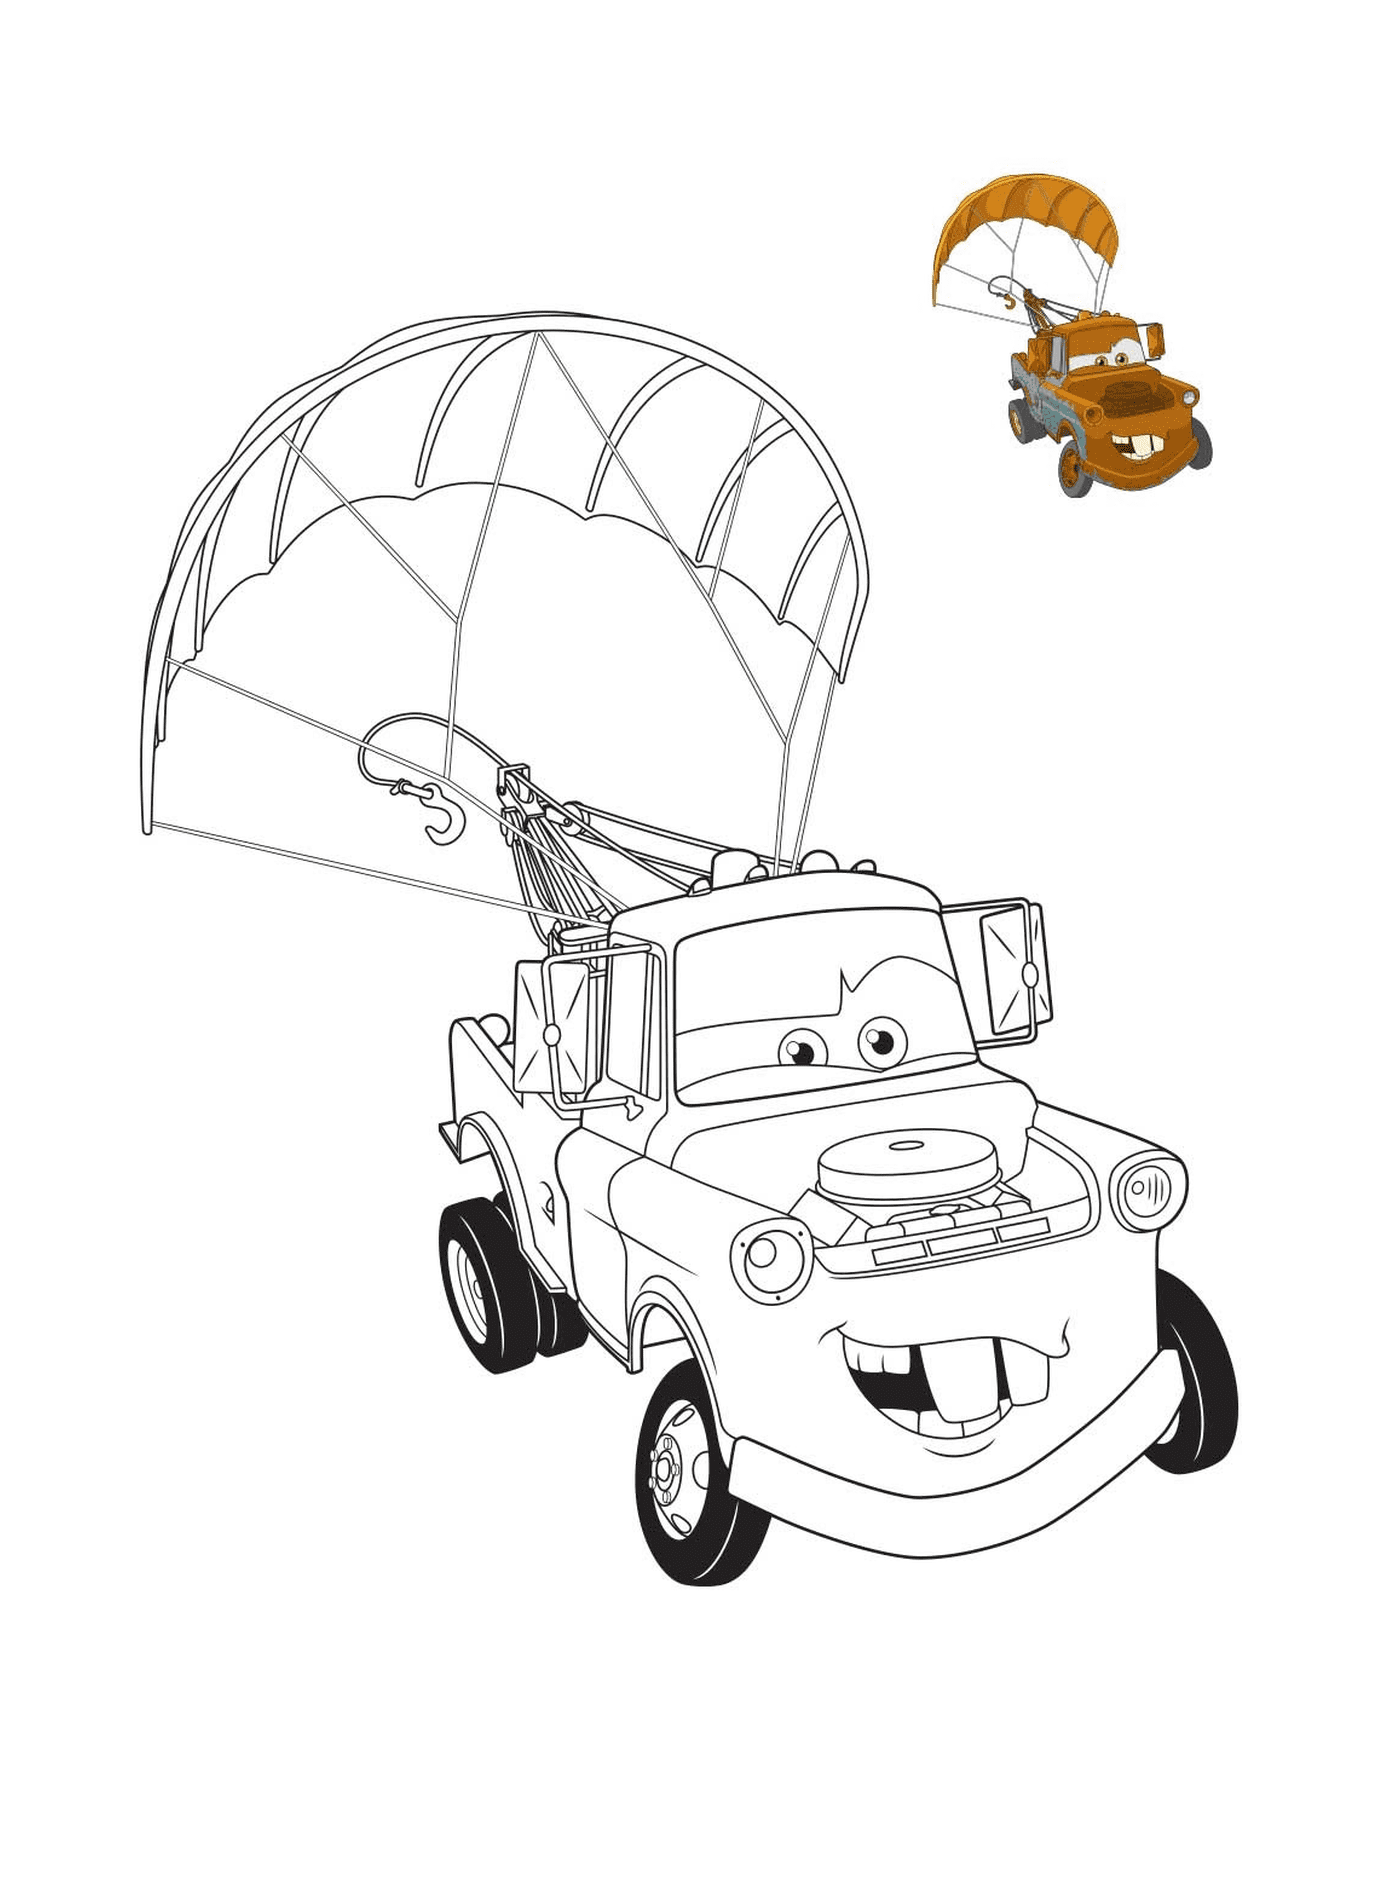  Film Cars 3, Martin il carro attrezzi con colorazione, un carro attrezzi con paracadute 